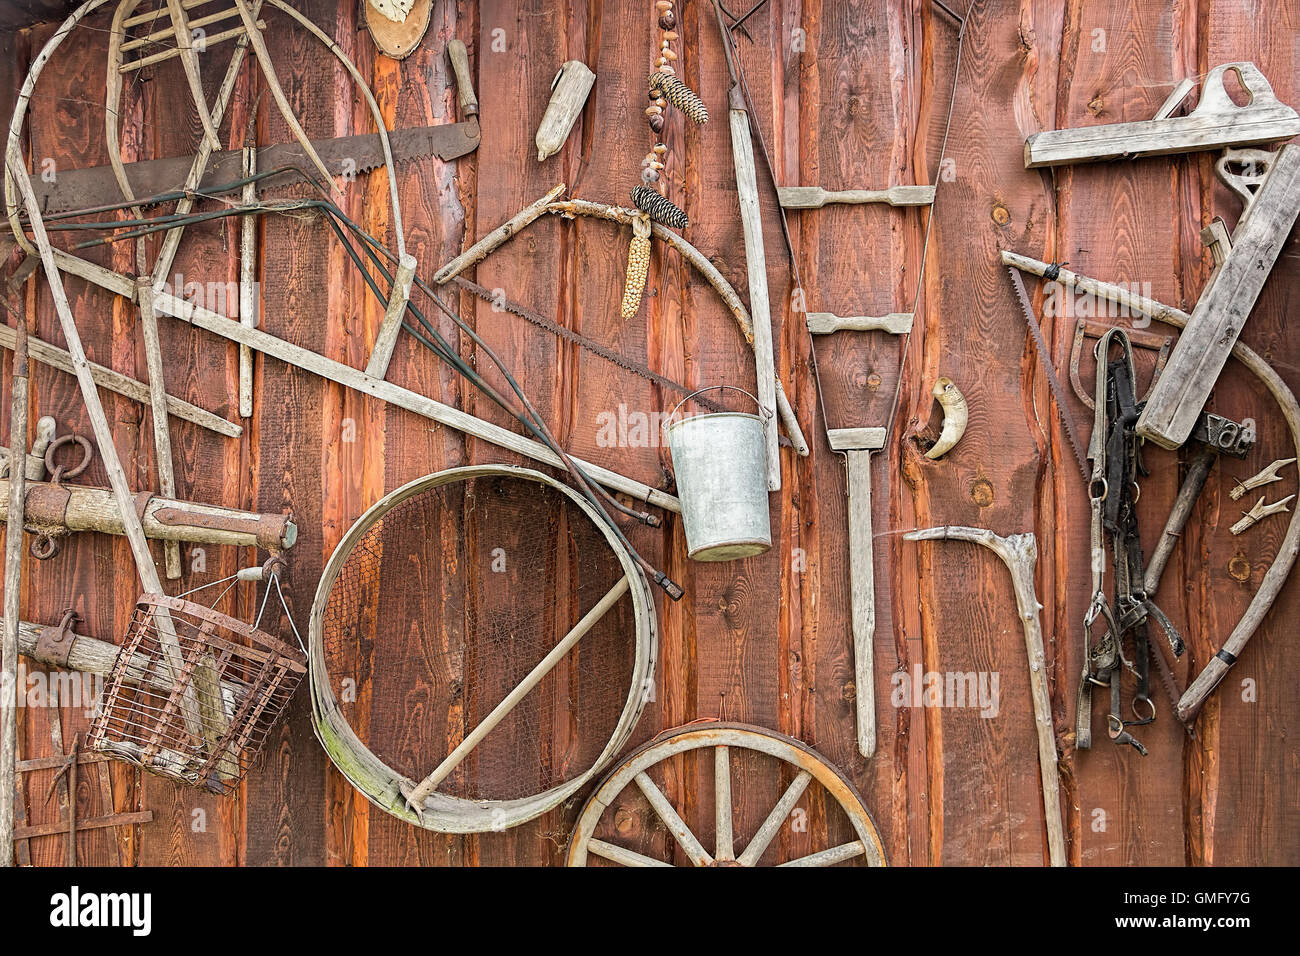 Sfondo rustico, collezione di vecchi vintage attrezzi agricoli sulla parete in legno Foto Stock